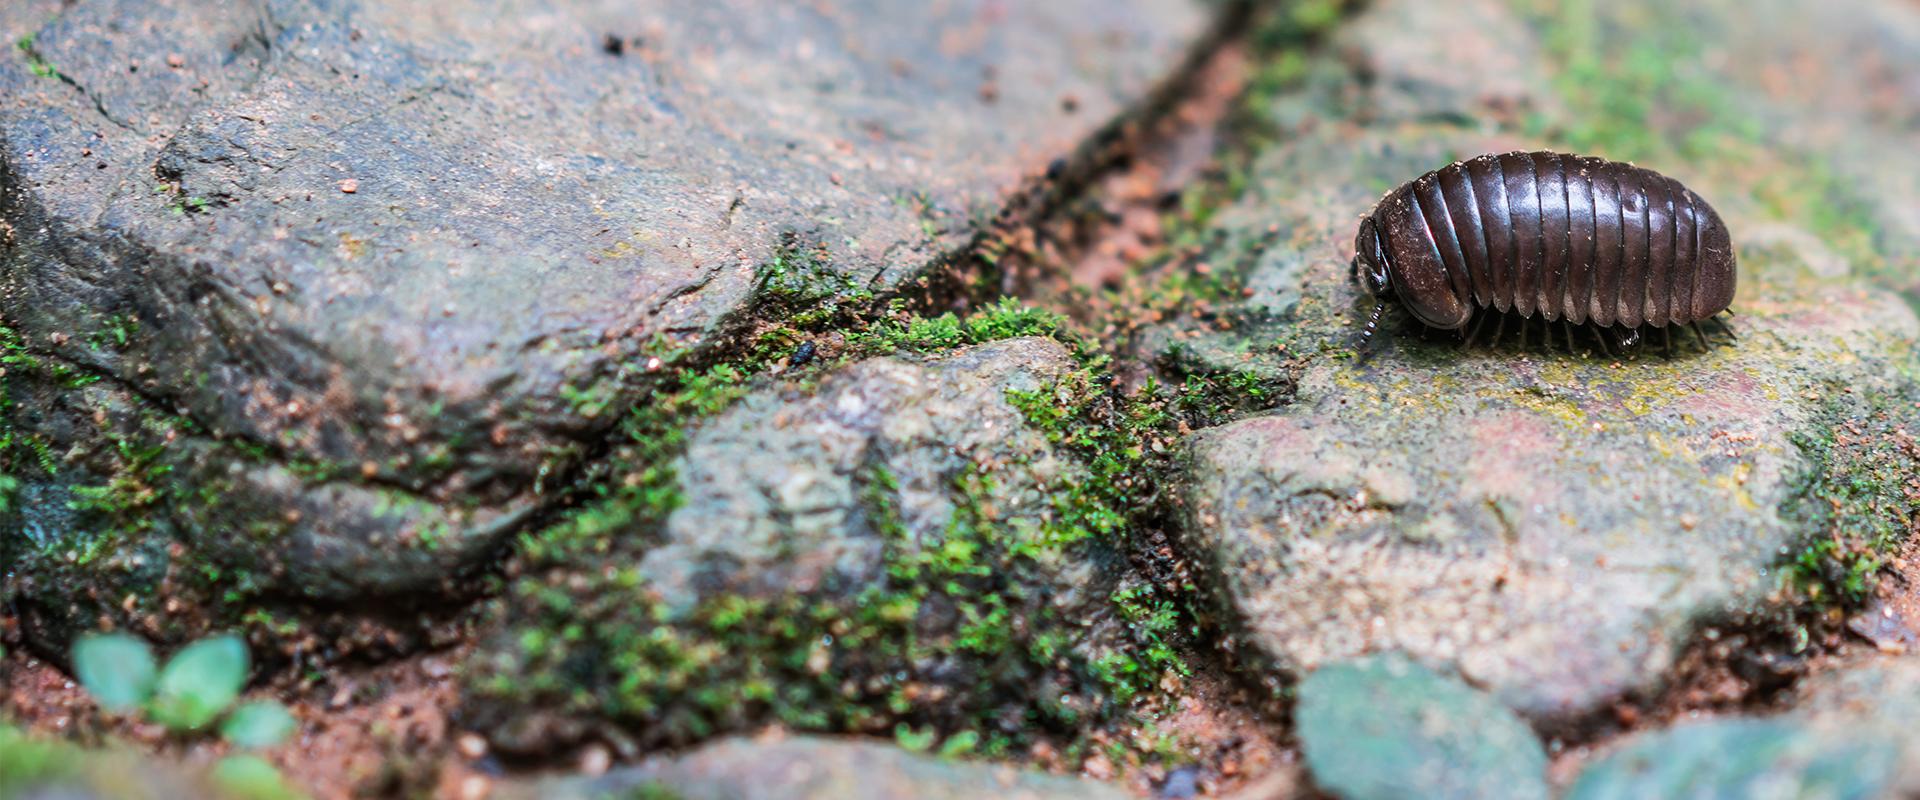 a little pill bug on a rock